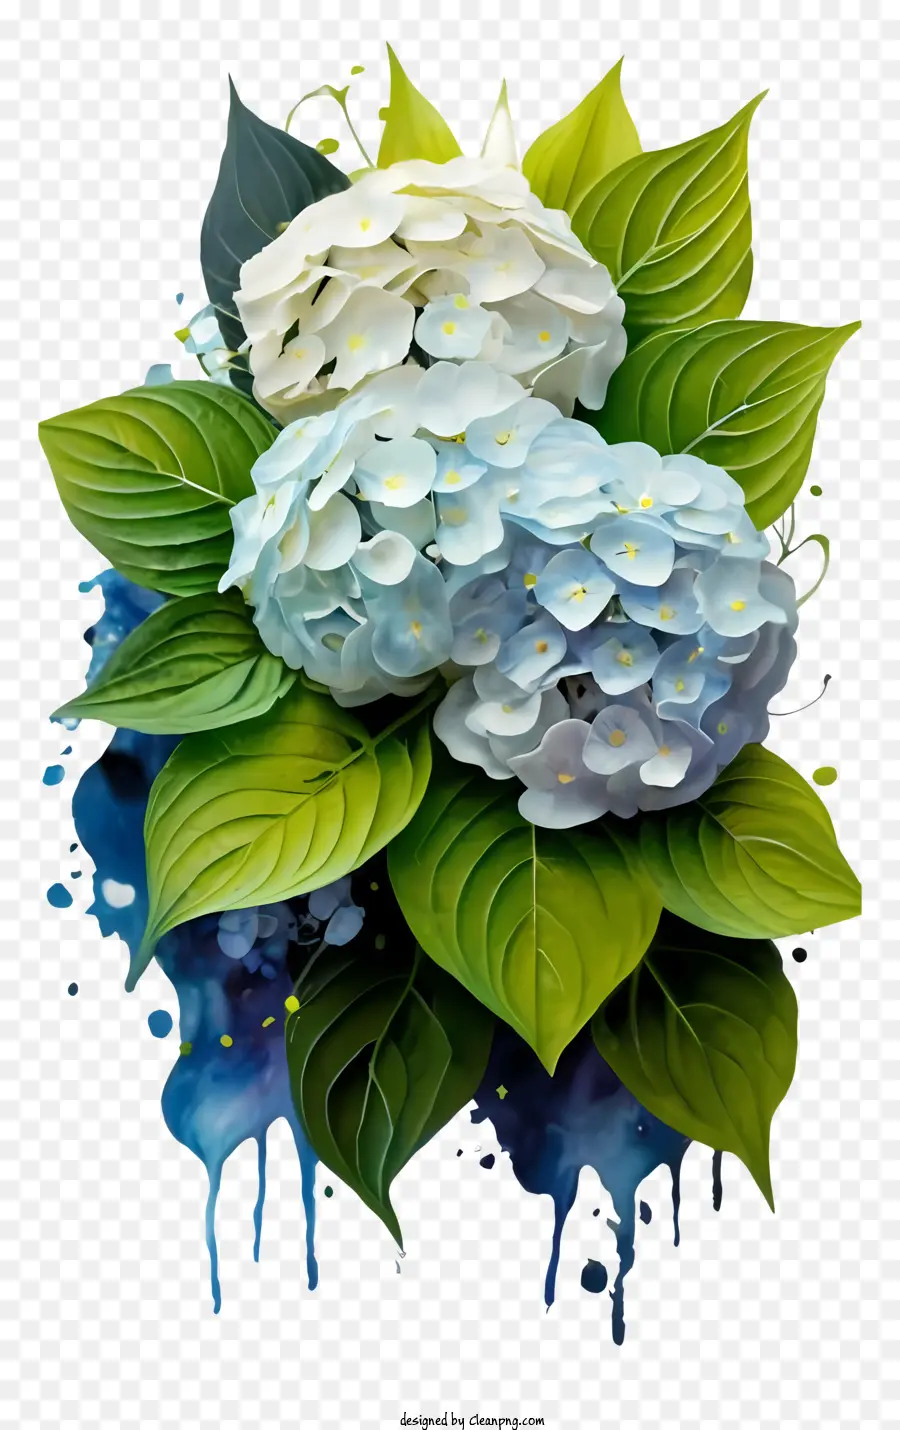 Malen Bouquet White Hortensias Blue Hortensias Schwarzer Hintergrund - Gemälde von weißen und blauen Hortensien auf dunklem Hintergrund